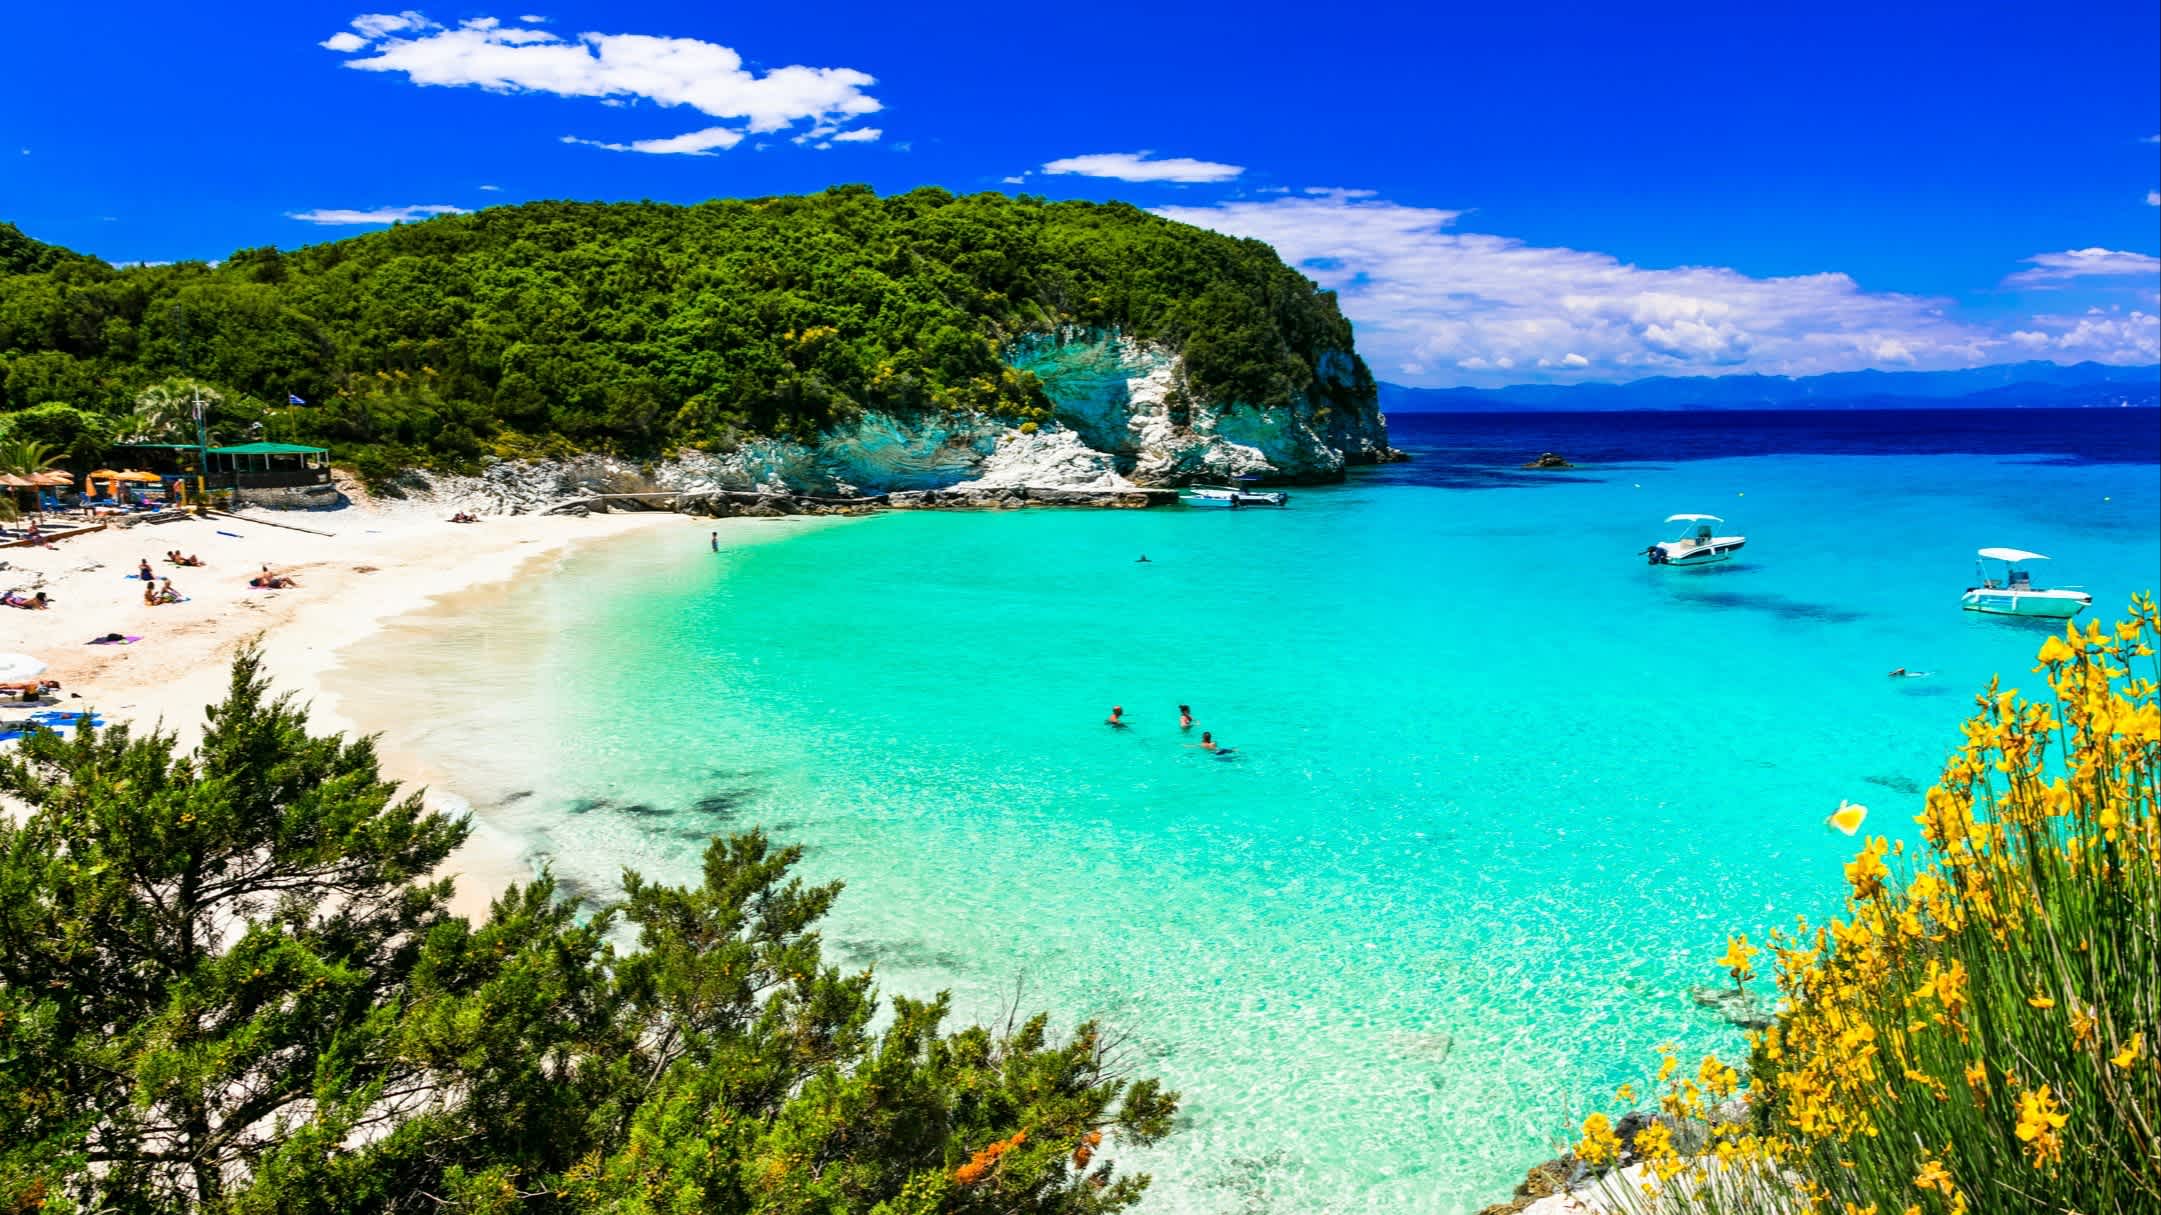 Der Strand von Vrika in Antipaxos, Ionische Inseln, Griechenland mit Blick über die gesamte Bucht, das türkisene Wasser sowie den belebten Strand und Booten.